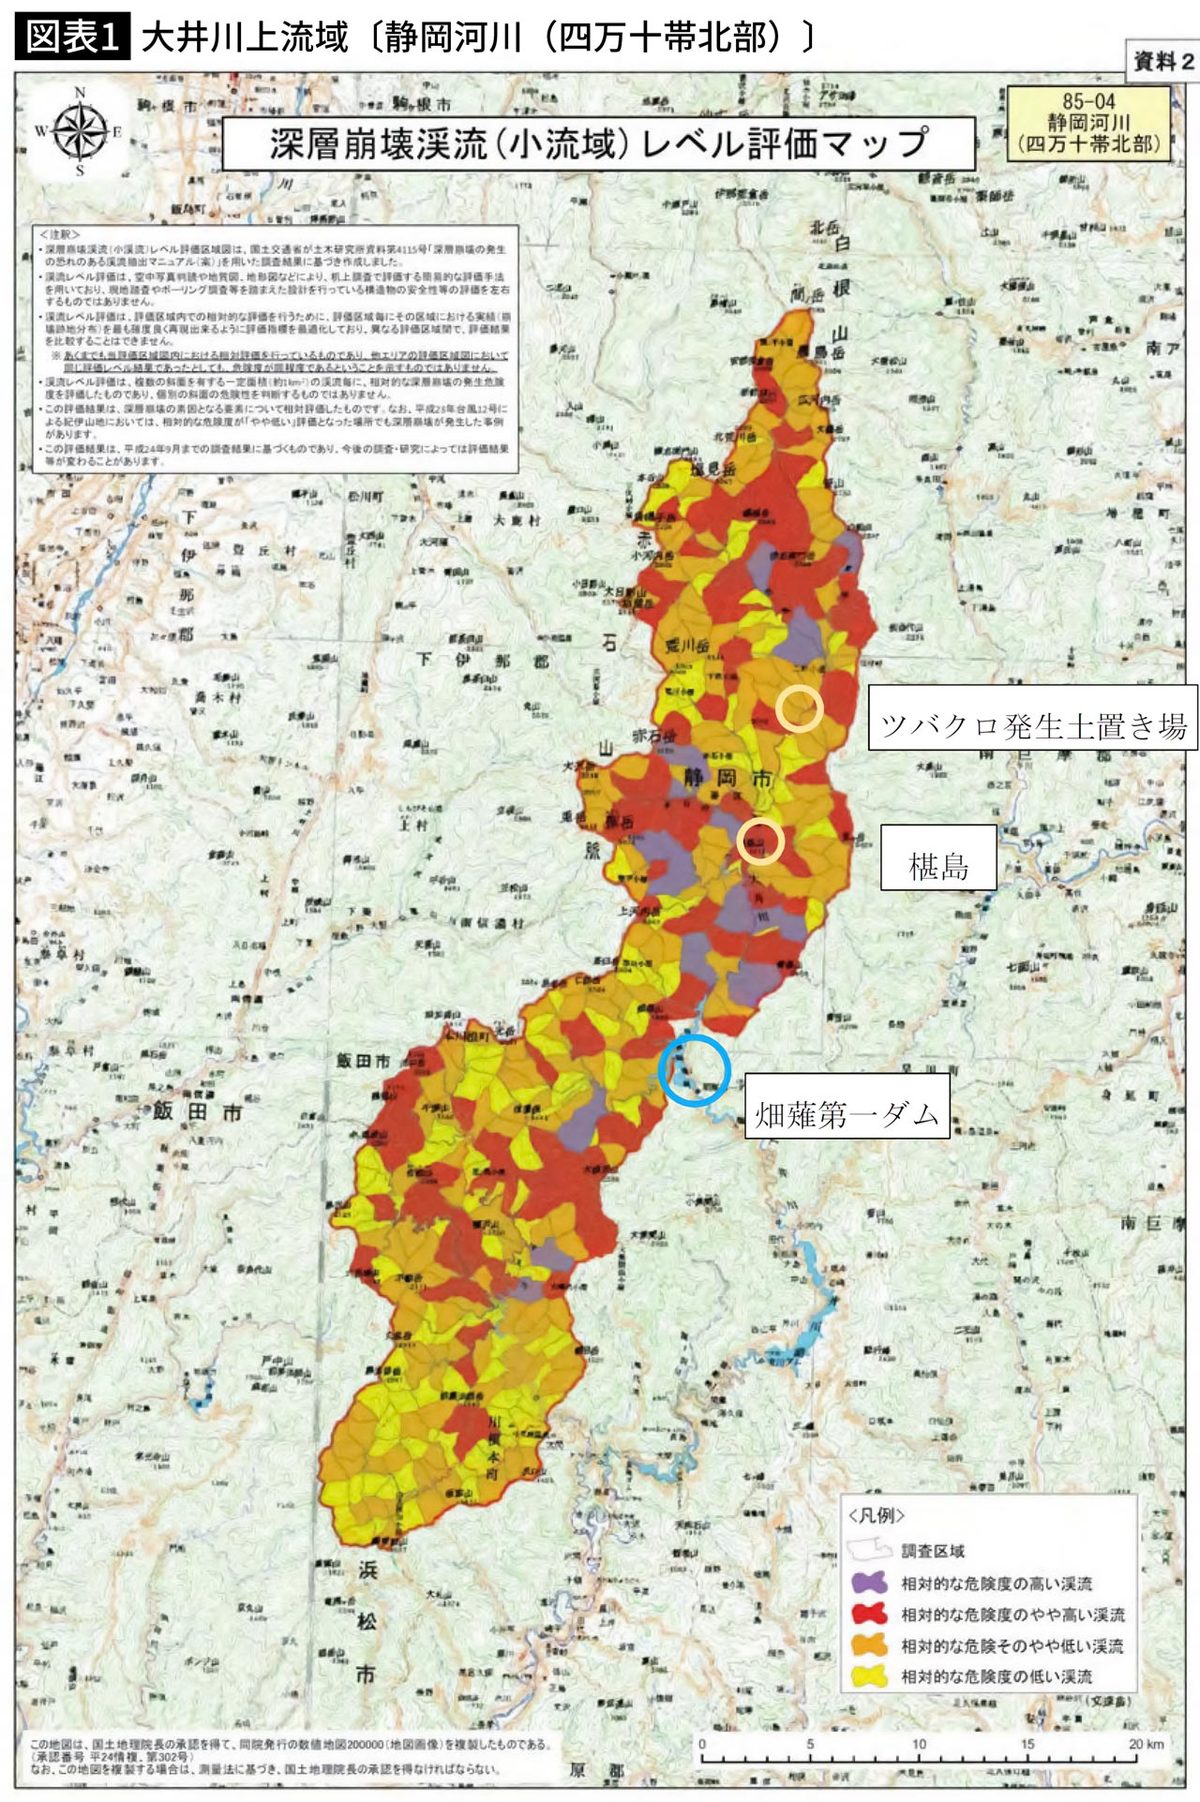 ※図表1＝深層崩壊渓流（小渓流）レベル評価マップの大井川上流域。国交省の資料を基にJR東海が加工し、8月3日の県専門部会で説明に使用された。